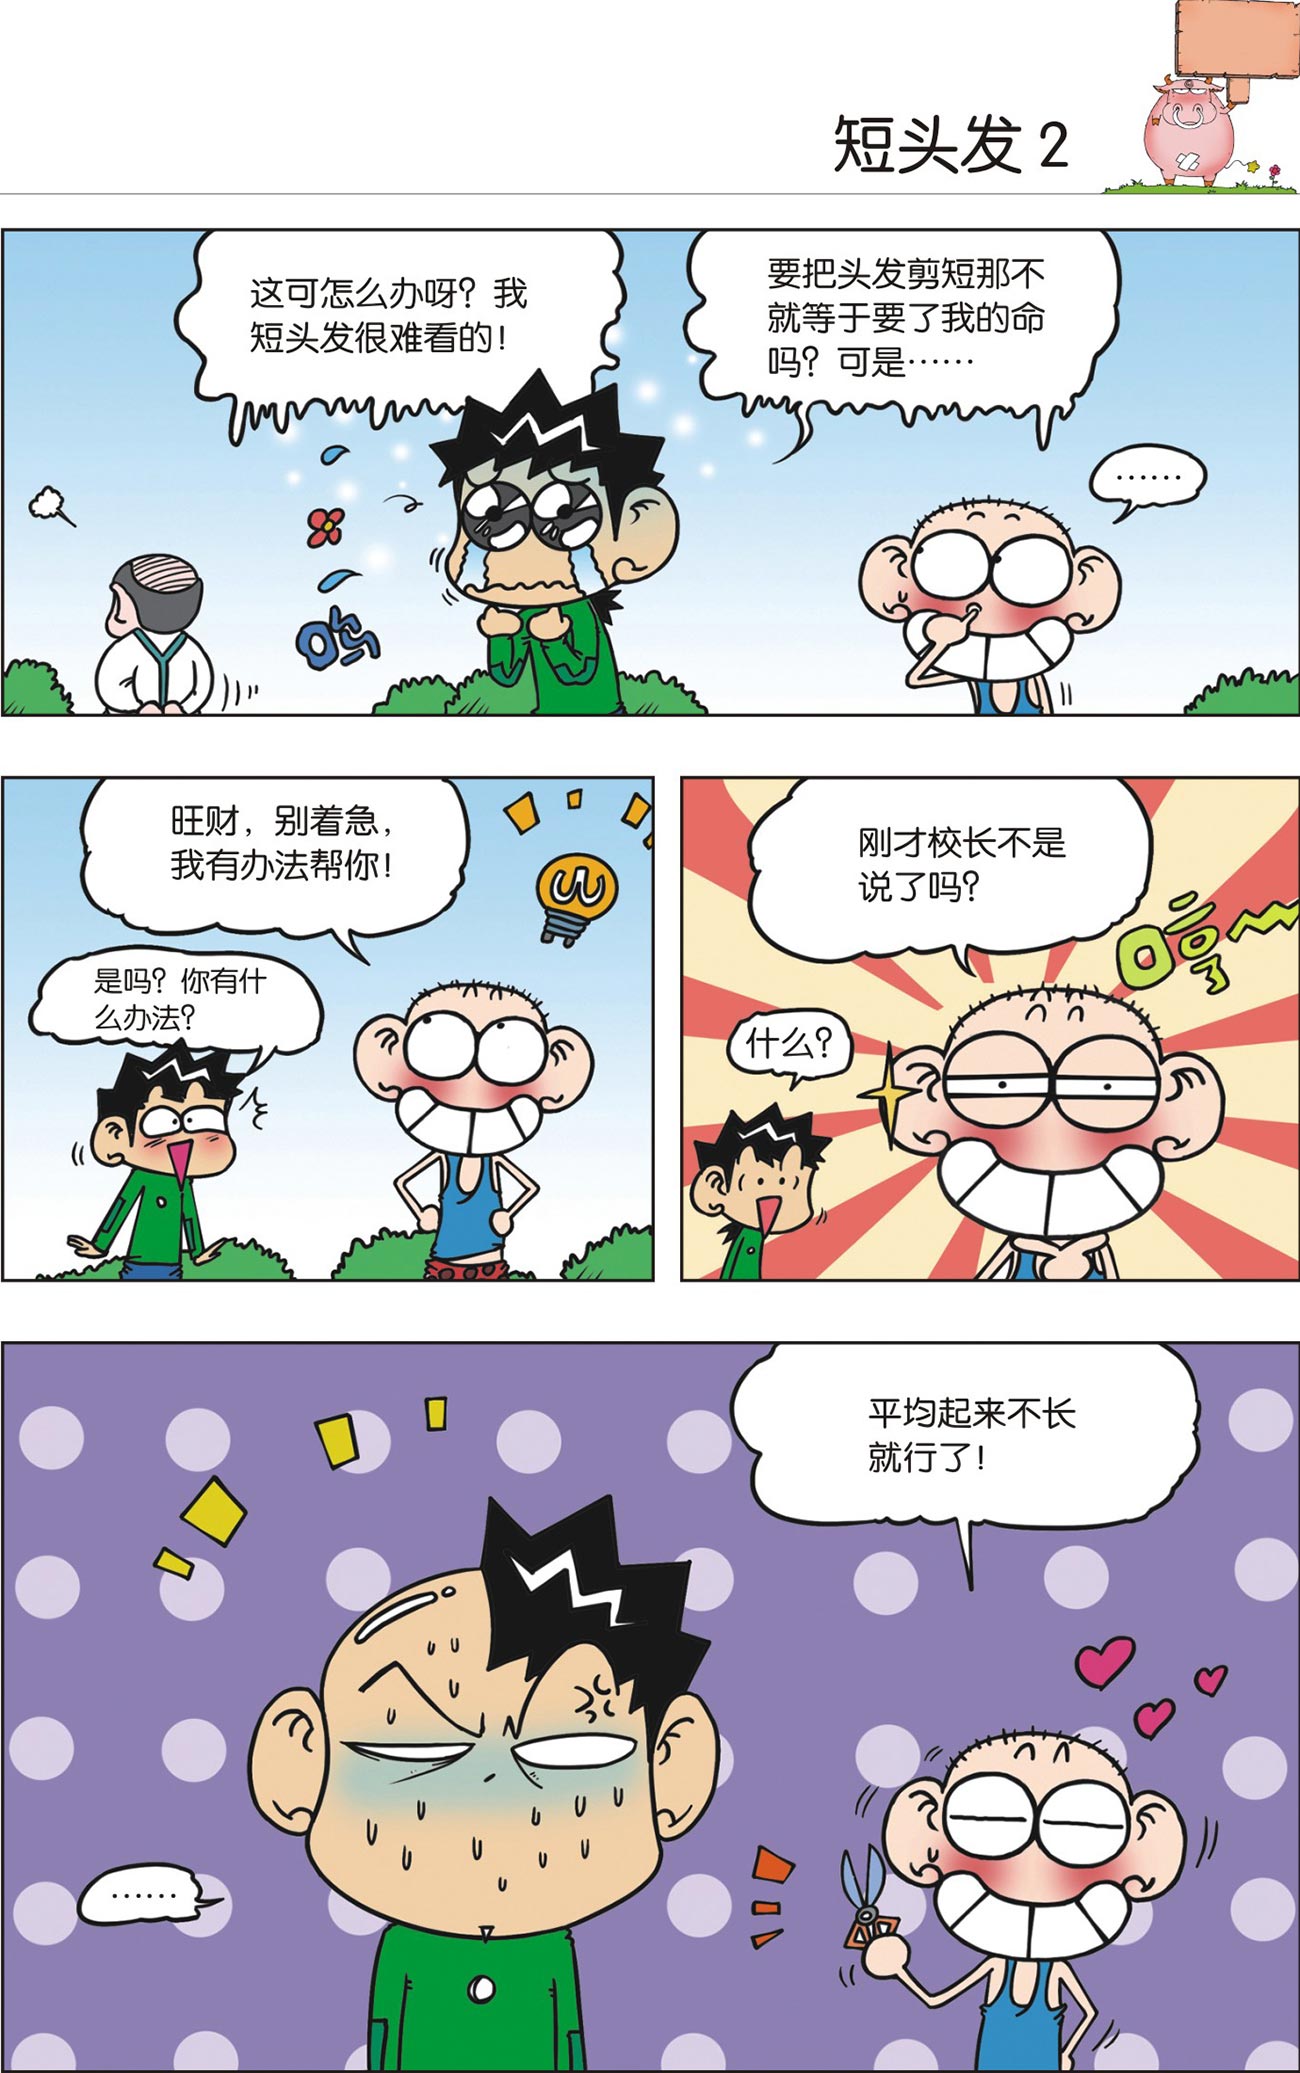 漫画世界幽默系列：爆笑校园27 – 玲子网络书房 Lingzi Online Bookstore